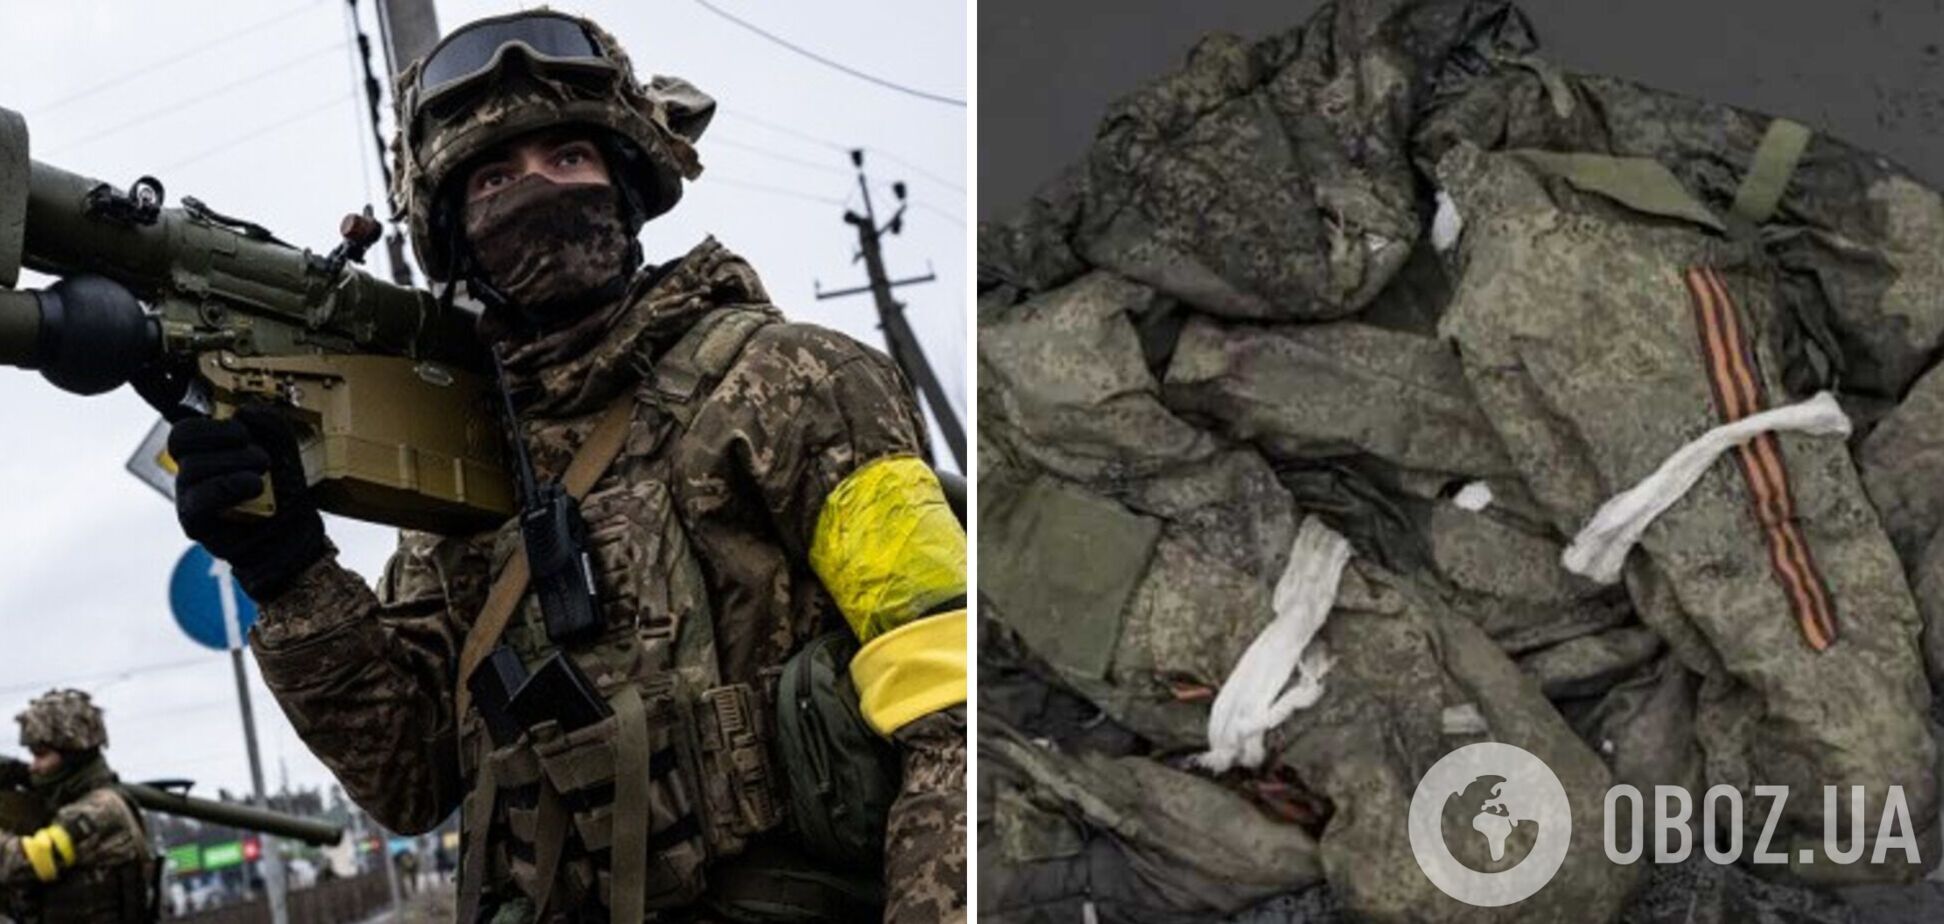 Українські бійці ліквідували підрозділ ЗС РФ, який складався з 'добровольців'